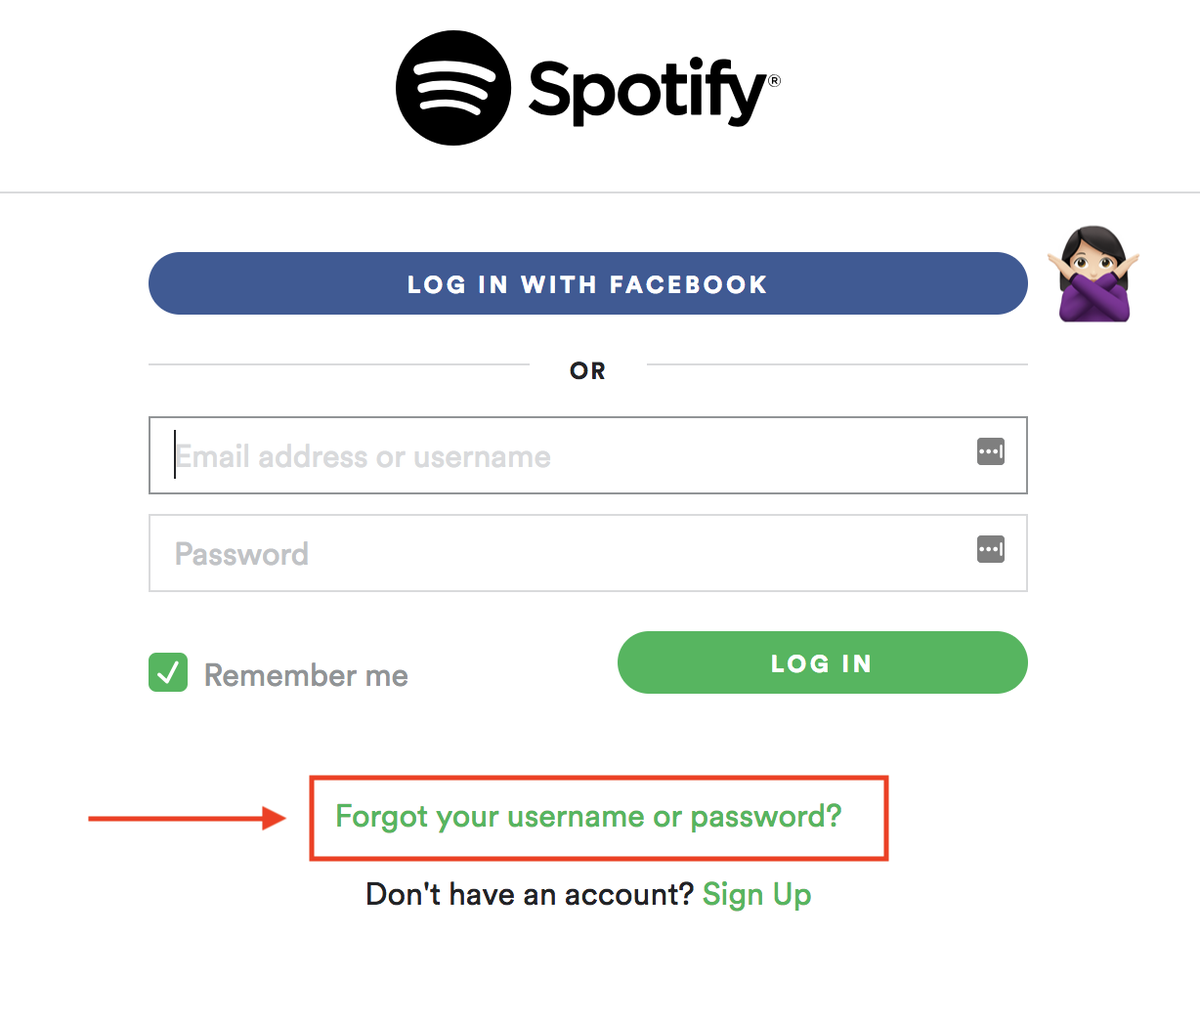 หากคุณสร้างบัญชี Spotify ด้วย Facebook จะเชื่อมโยงกับ Facebook ตลอดไป